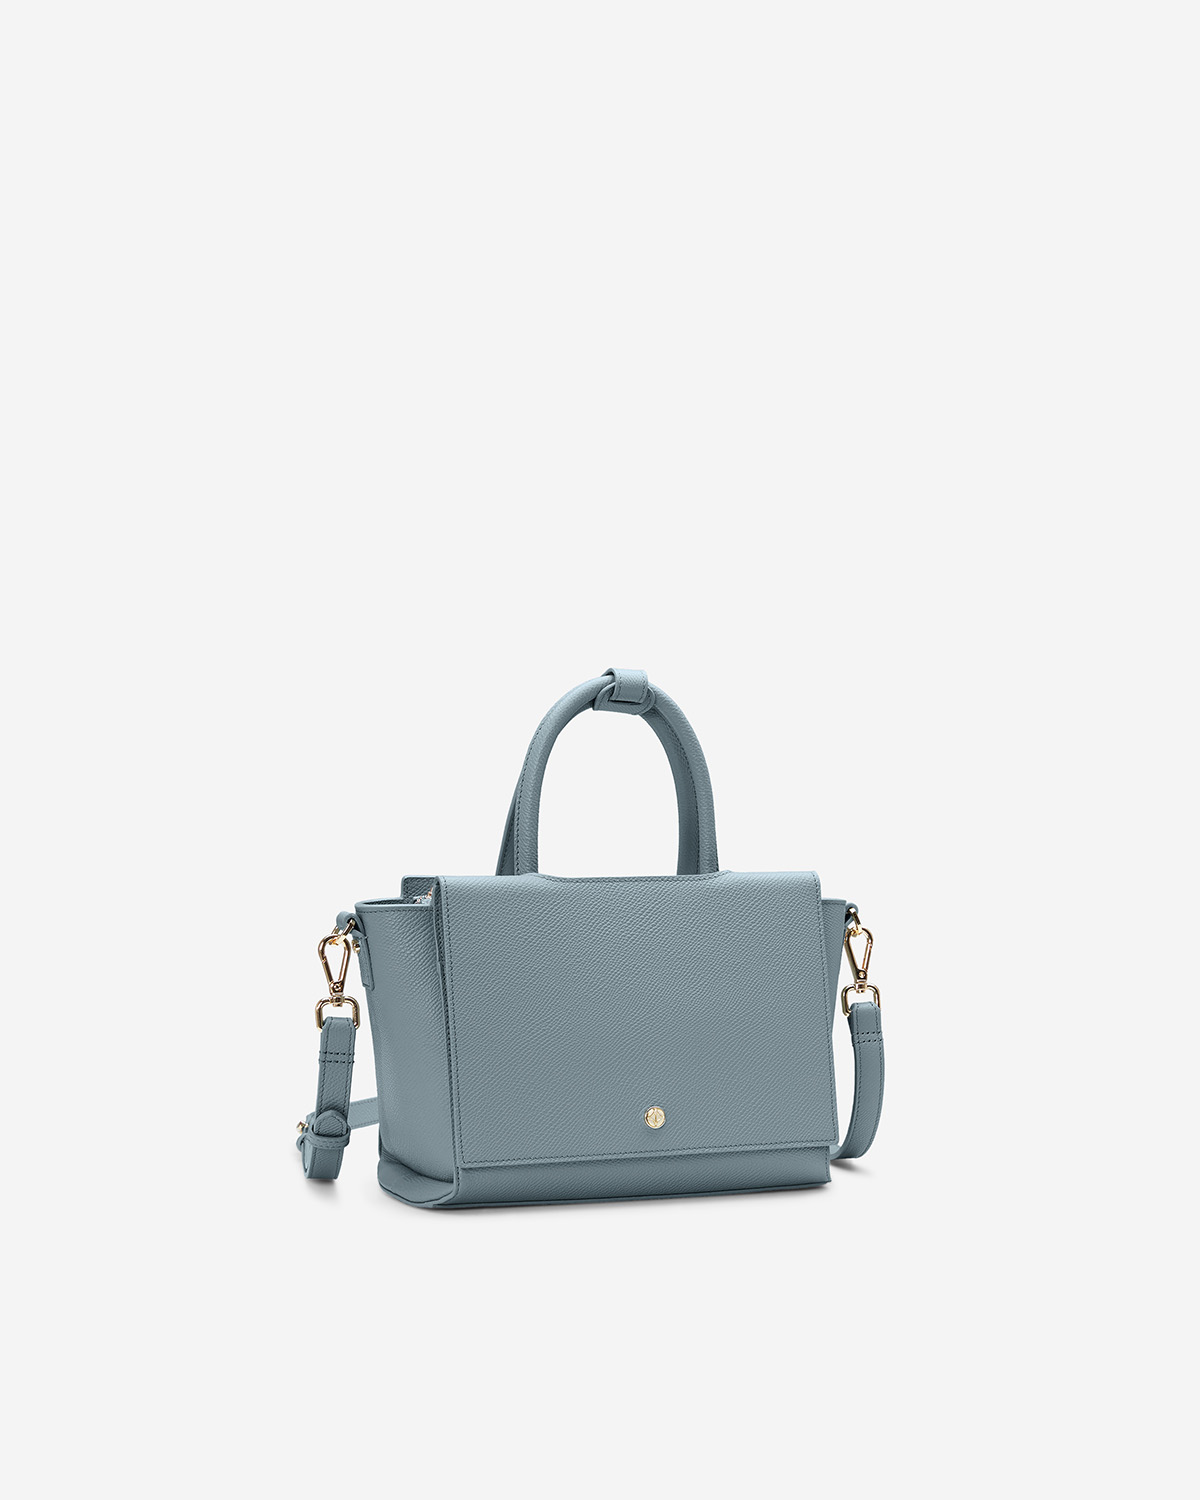 กระเป๋าถือหนังแท้ VERA Heidi Leather Handbag, ไซส์ 22 สี Cloud